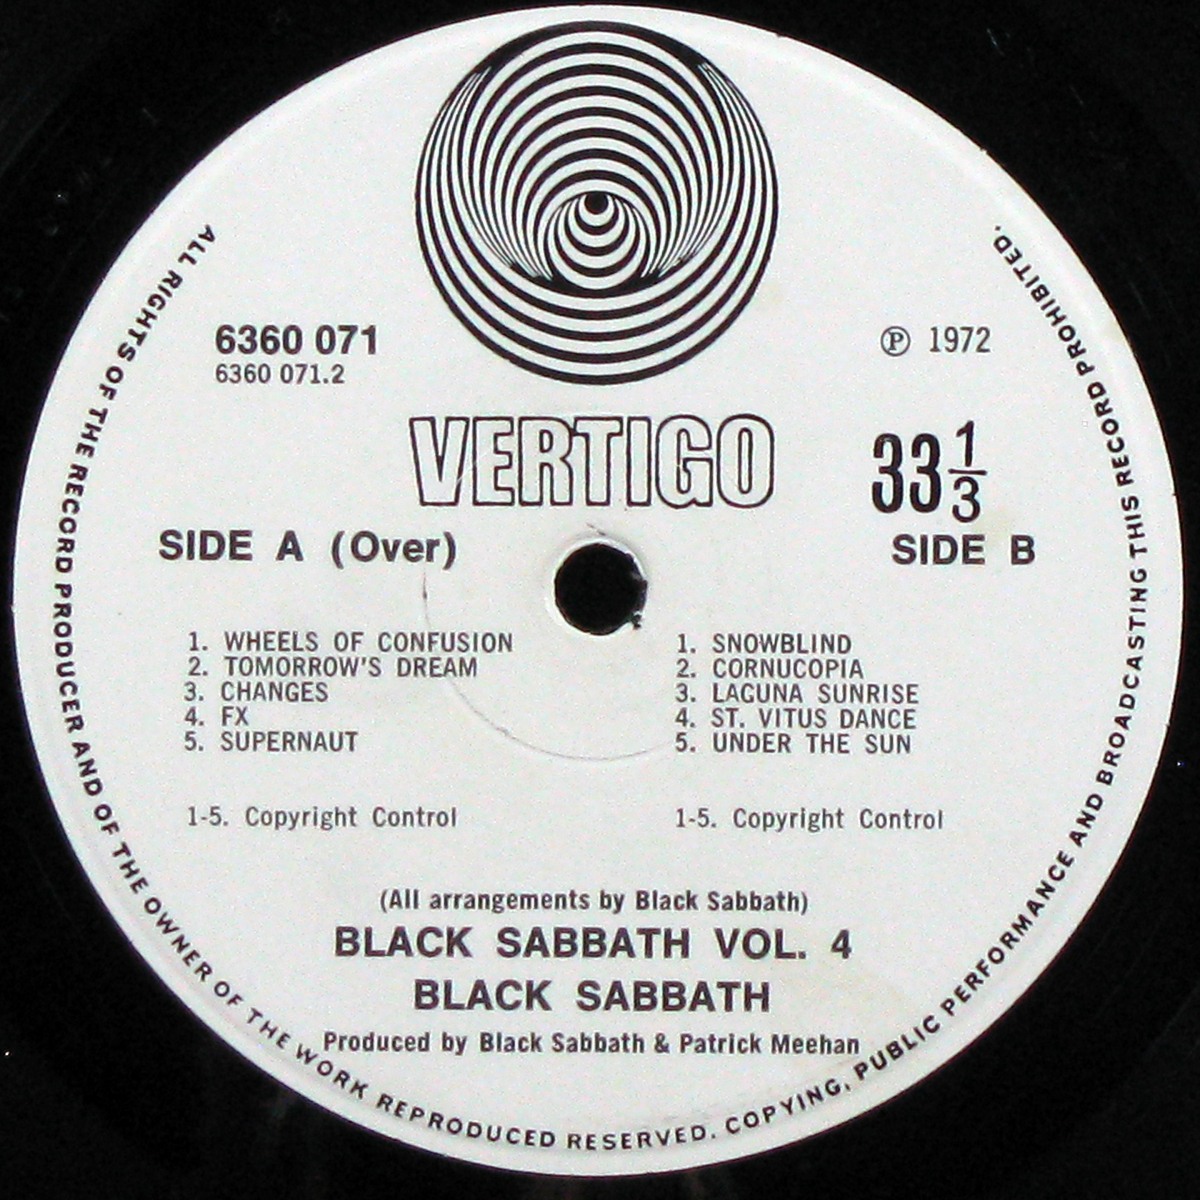 LP Black Sabbath — Black Sabbath Vol 4 (+ booklet) фото 5